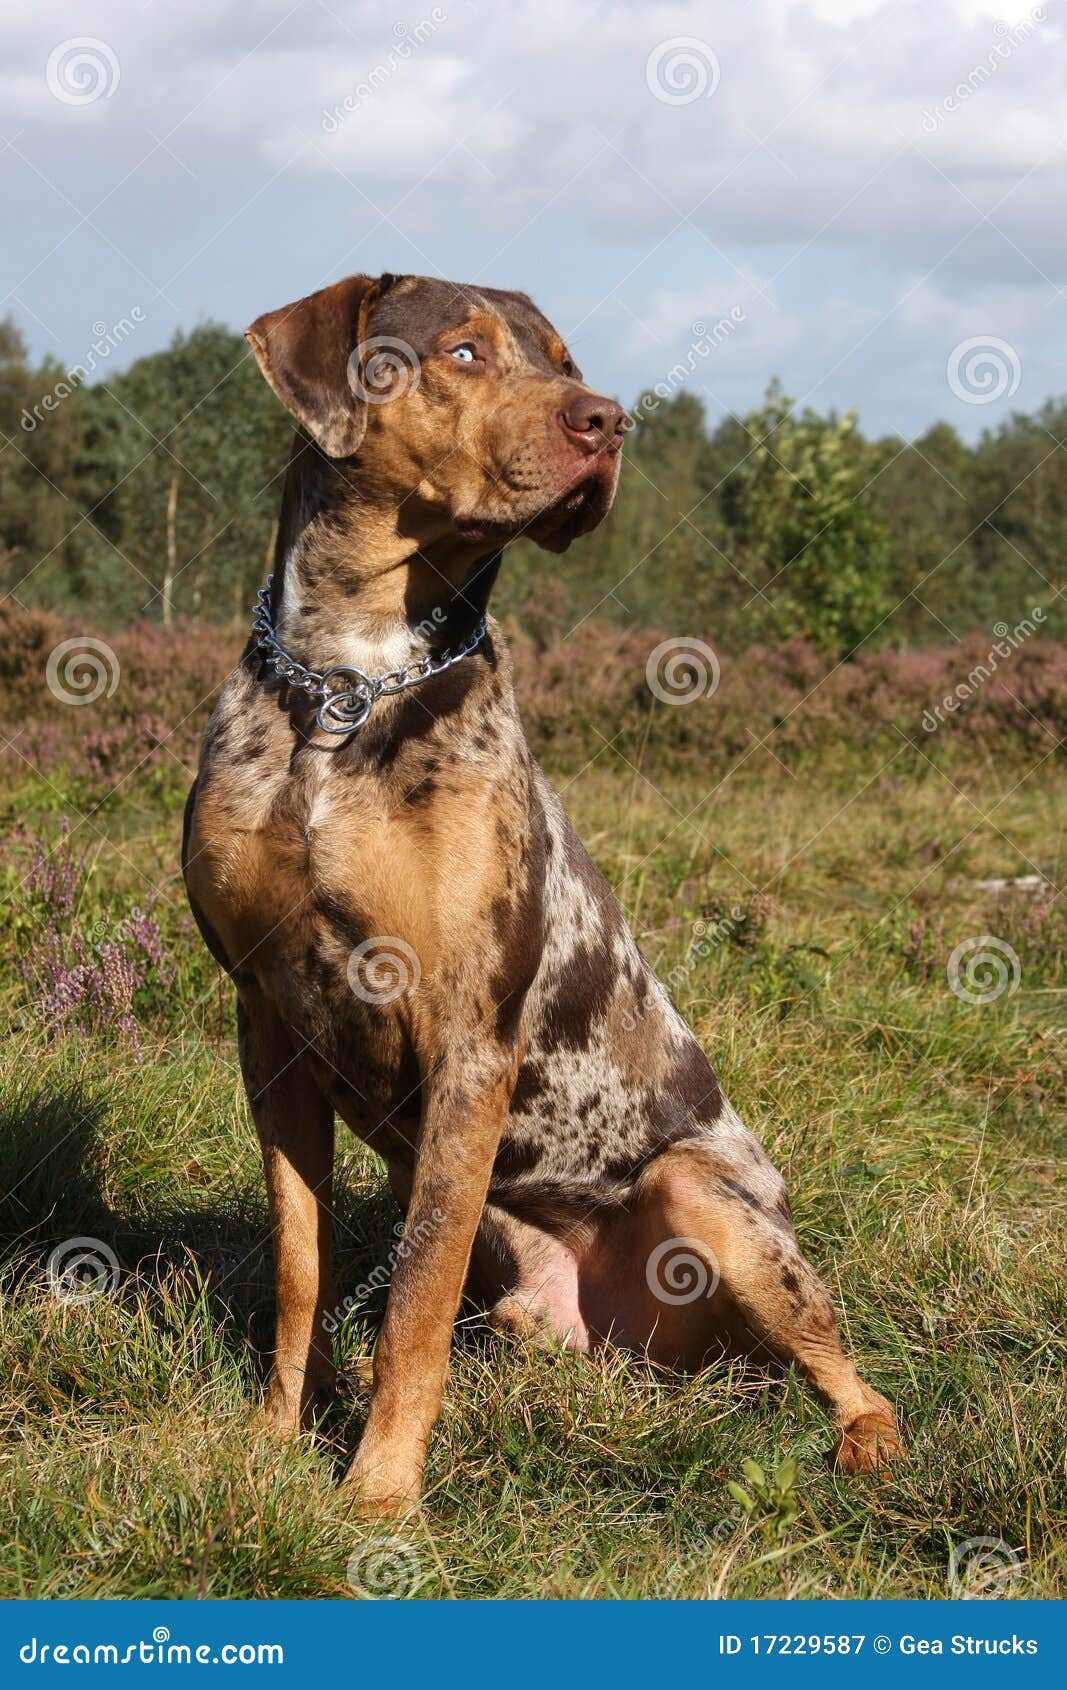 与豹子皮肤样式衣领的常设迷人的狗 库存照片. 图片 包括有 守纪, 衣领, 脖子, 宠物, 服从, 魅力 - 88093088